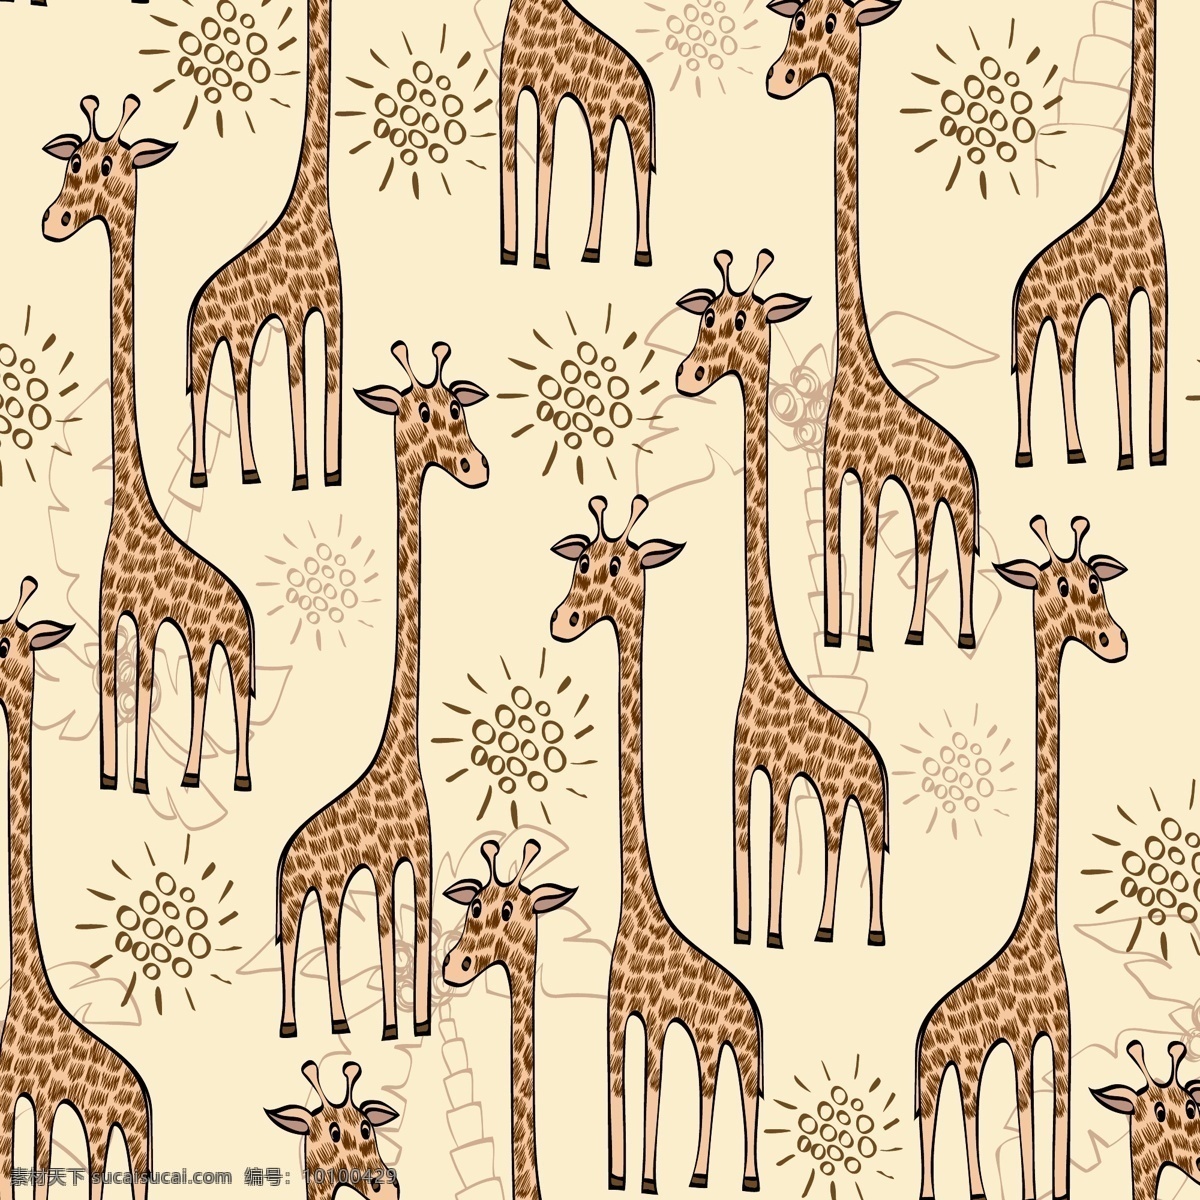 矢量动物 鹿 象 无限 长颈鹿鹿 背景 衔接 卡通 动物 底纹边框 背景底纹 无限图 生物世界 野生动物 白色